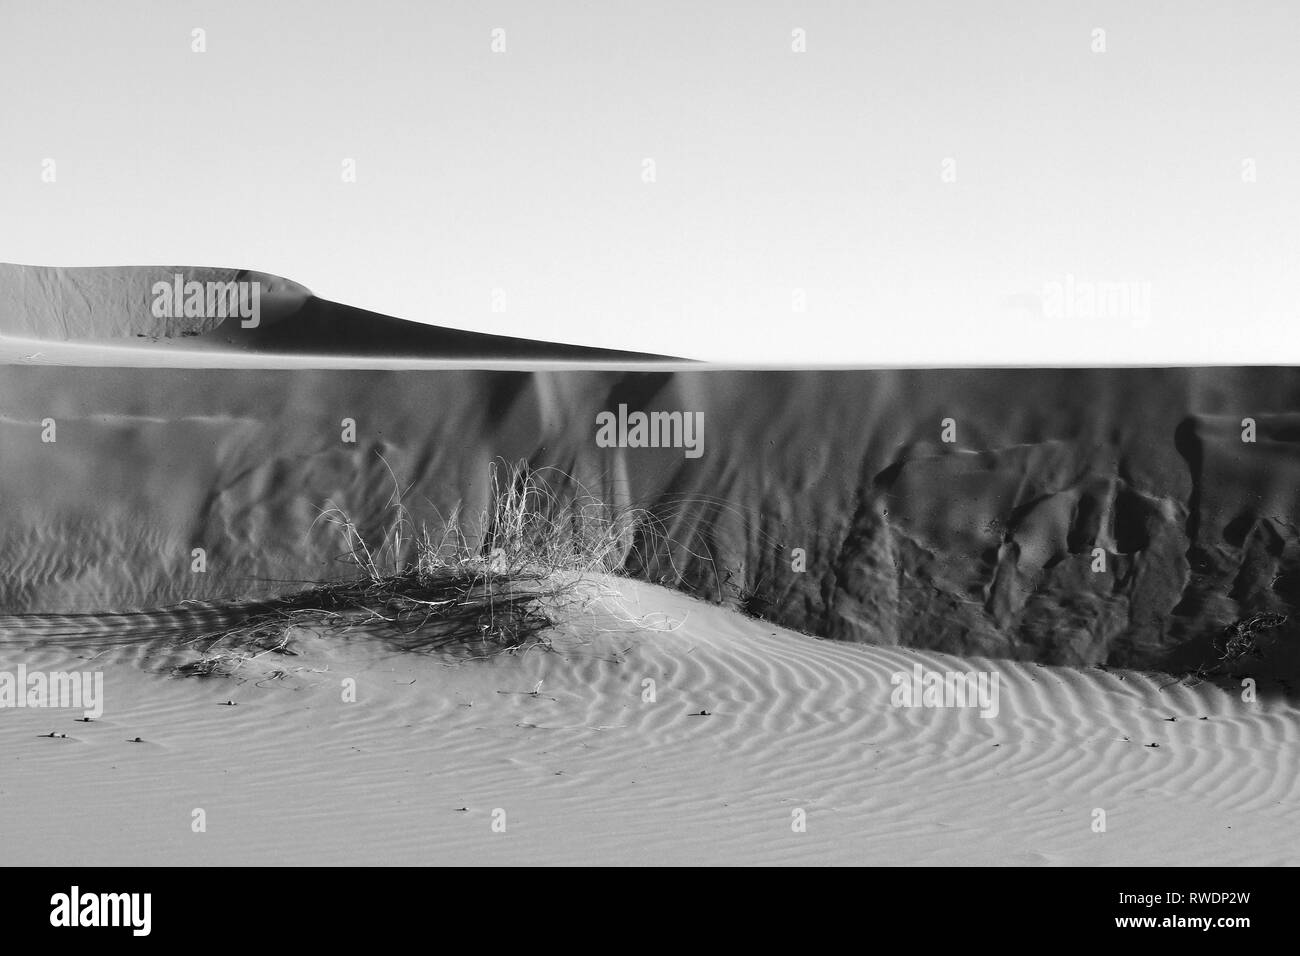 Dünen der Sahara. Sichtbar interessante Texturen und Muster auf Sand Oberfläche. Dünen Form. Schatten und Lichter auf Sand Wand. Schwarz und Weiß. Stockfoto